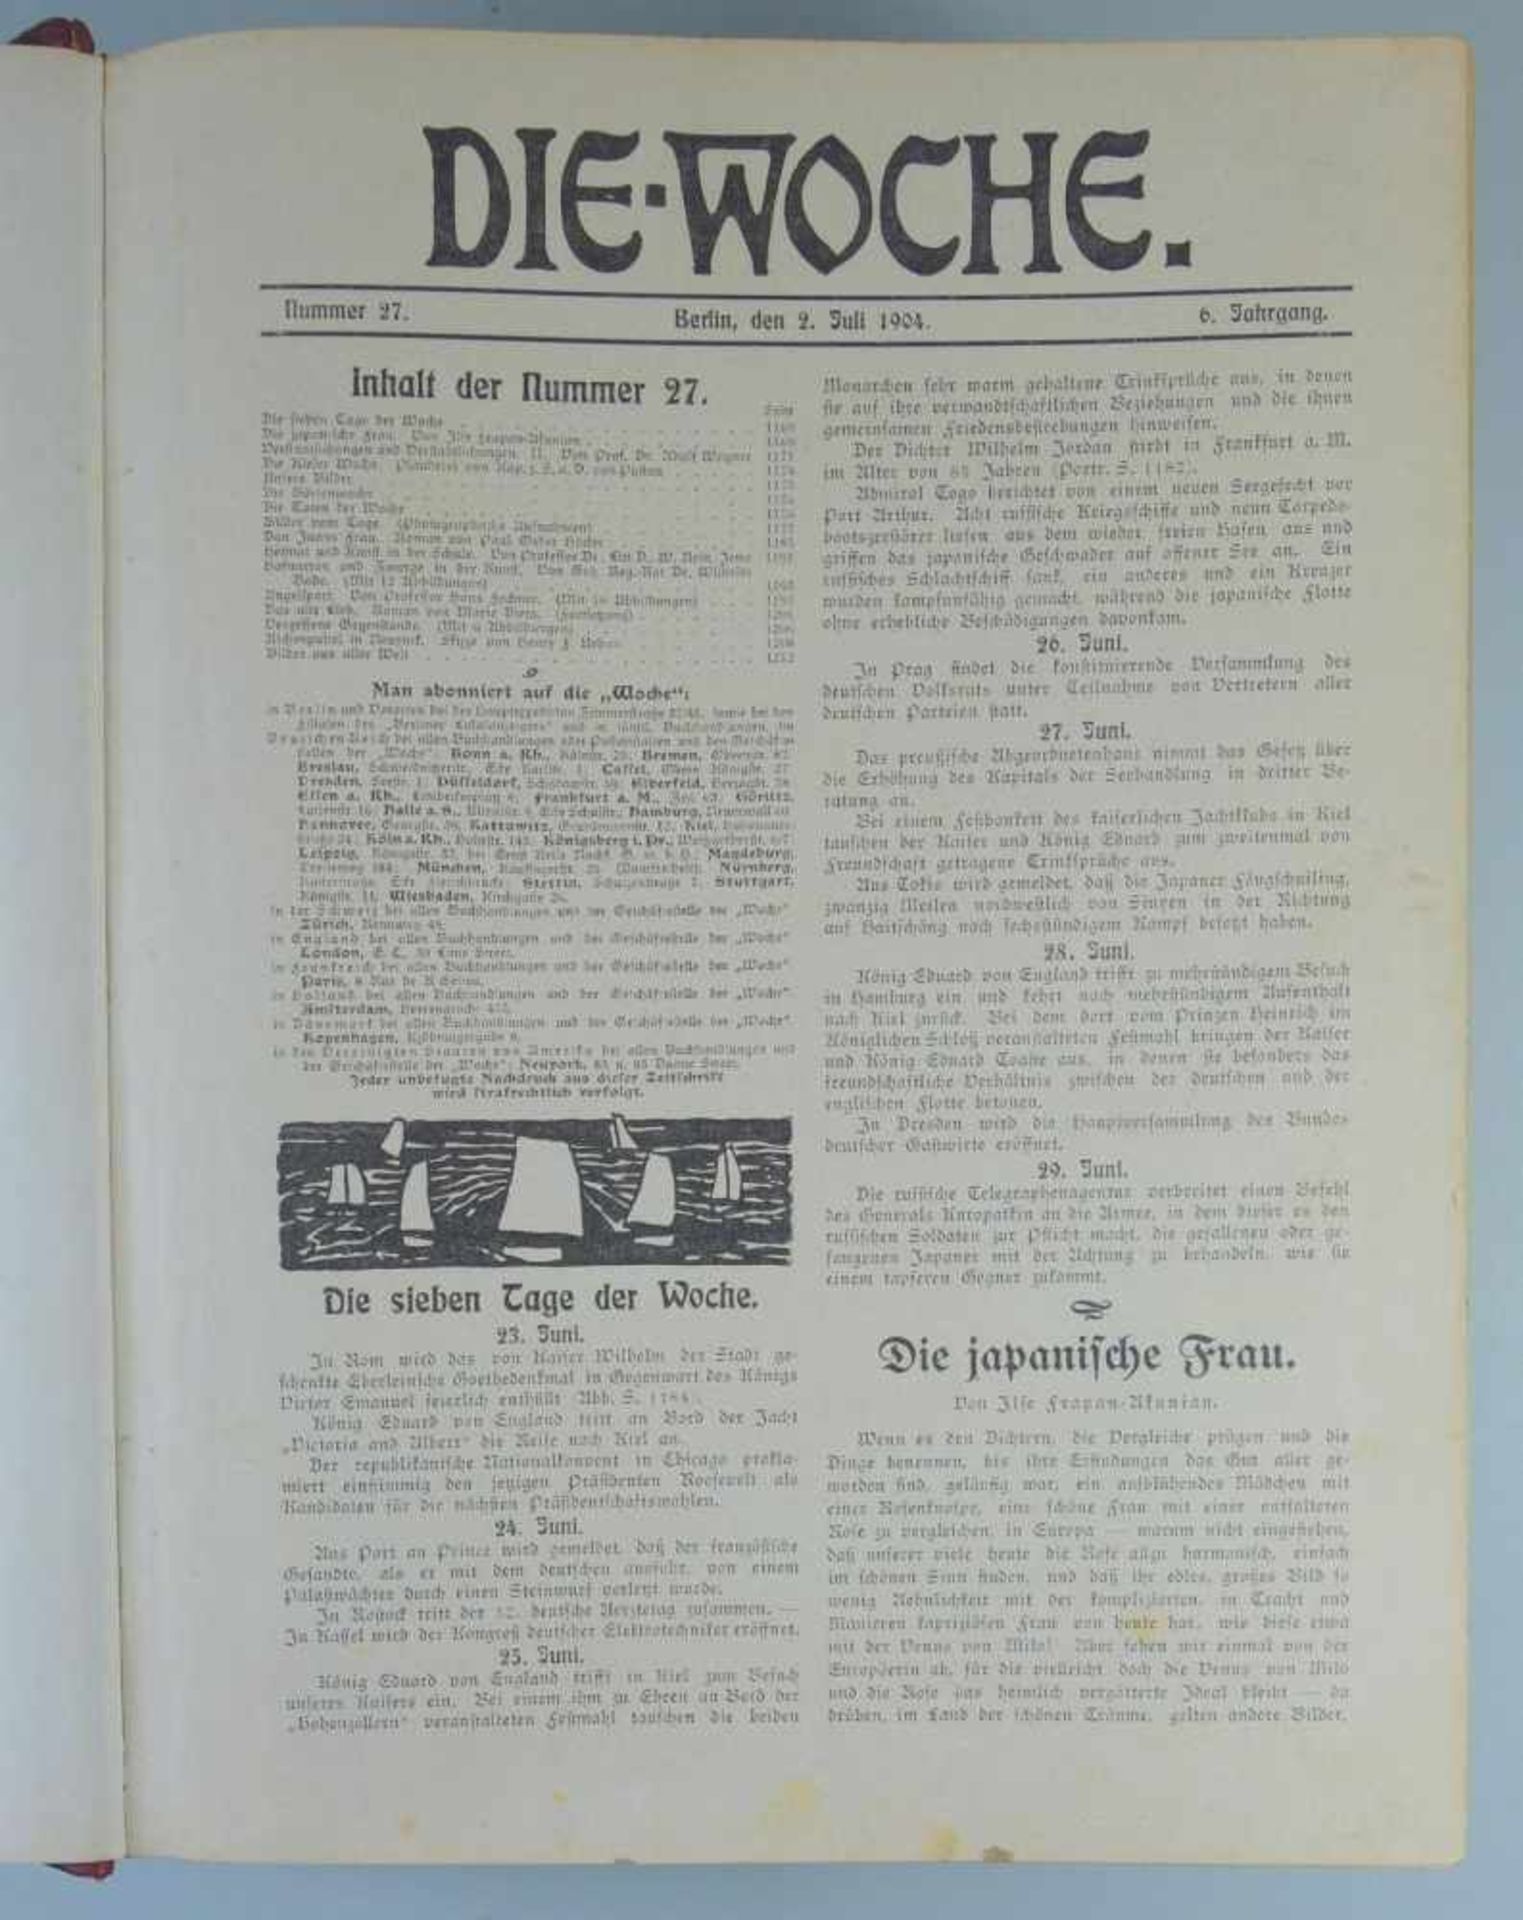 Zeitschrift Die Woche, Jahrgang 1904 in 2 Bdn.Nr.1 bis Nr.53, gebunden, Zust.2 - Bild 2 aus 2